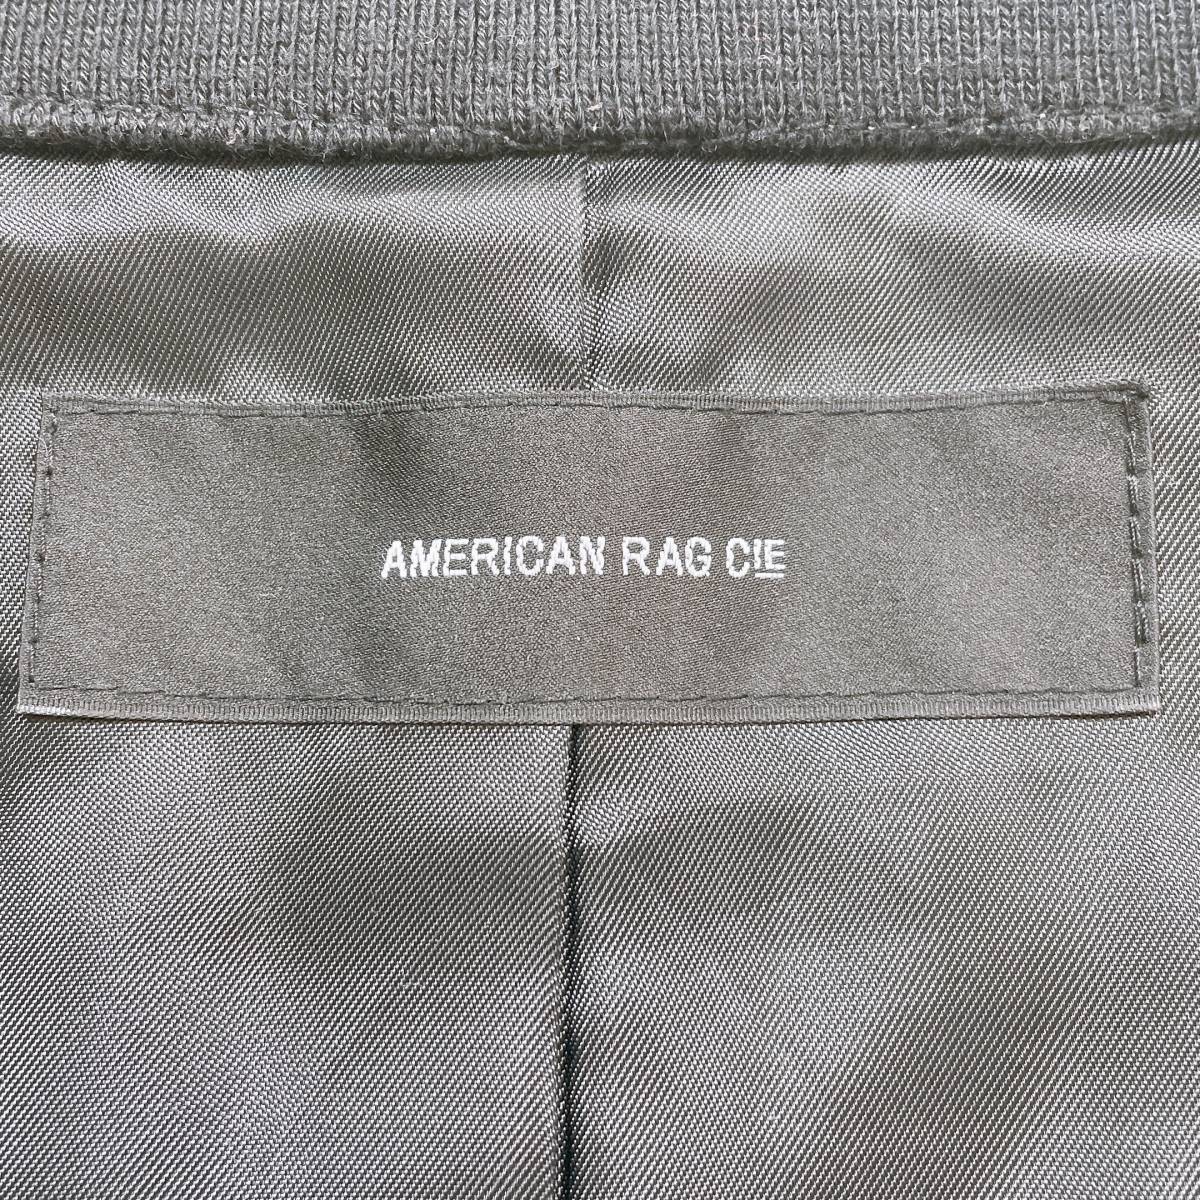 メンズ1 S AMERICAN RAG CIE ジャンパー グレー 灰色 ブラック 黒 訳アリ品 ボタン ファスナー かっこいい アメリカンラグシー 【26140】